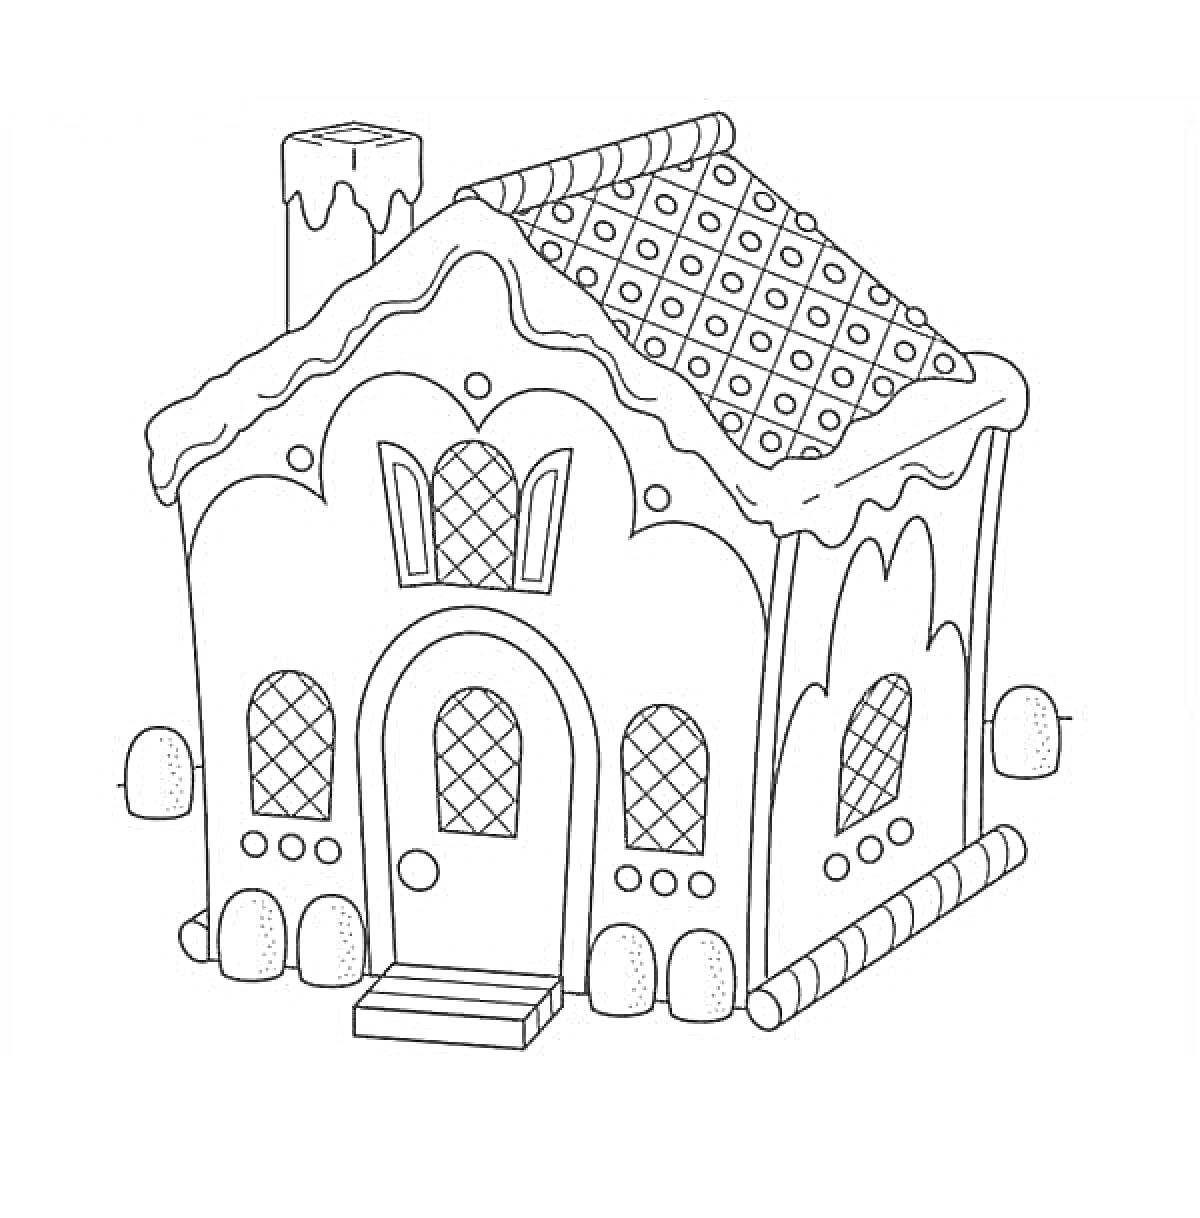 Раскраска Пряничный домик со снежной крышей, дверьми и окнами в форме ромбов, округлым декором по периметру и трубой